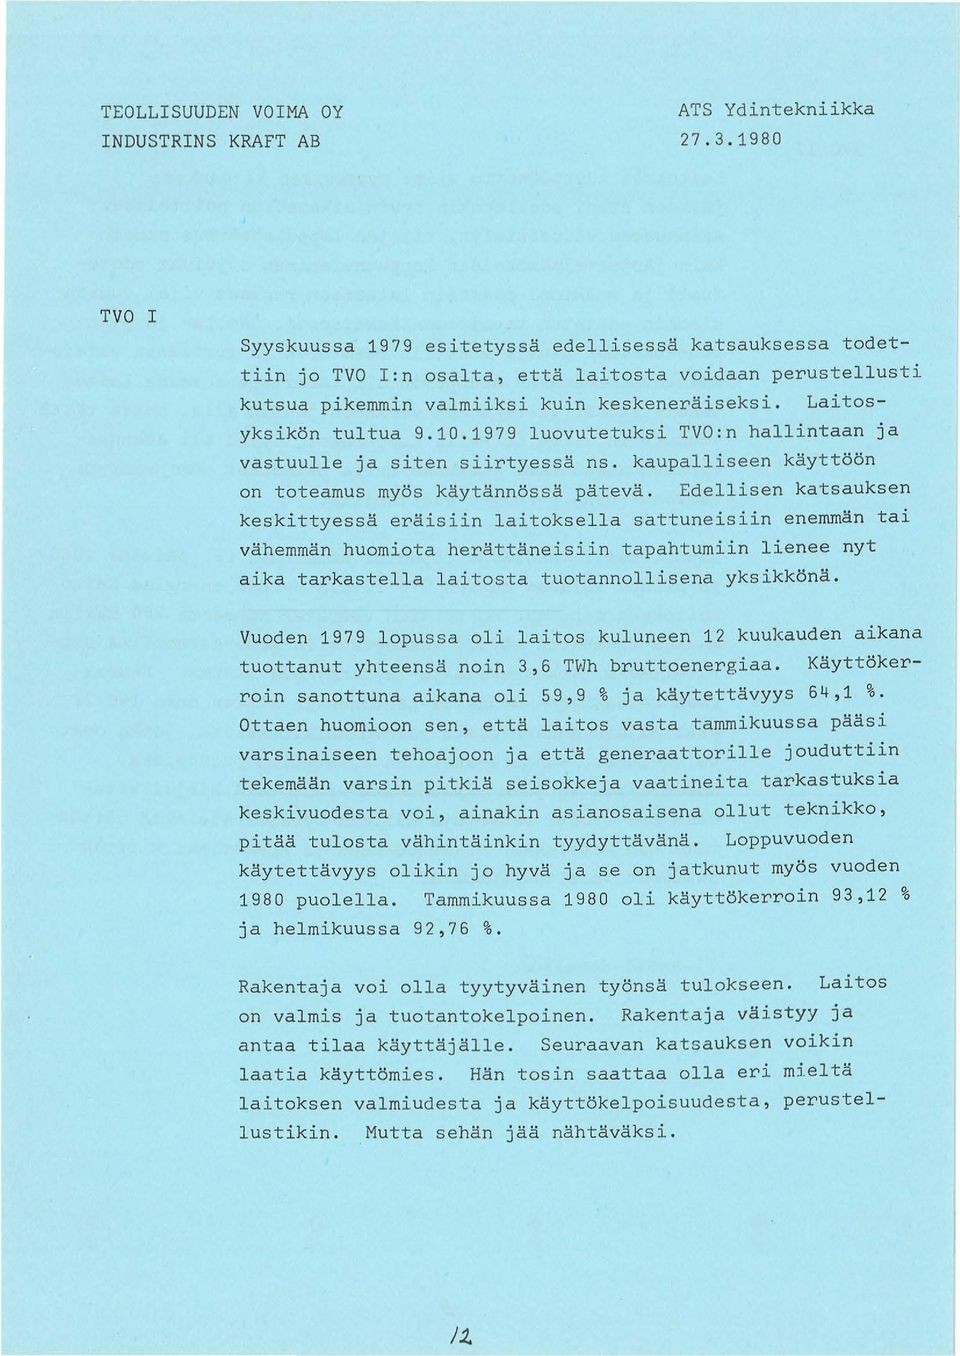 10.1979 luovutetuksi TVO:n hallintaan ja vastuulle ja siten siirtyessa ns. kaupalliseen kayttoon on toteamus myos kaytannossa pateva.